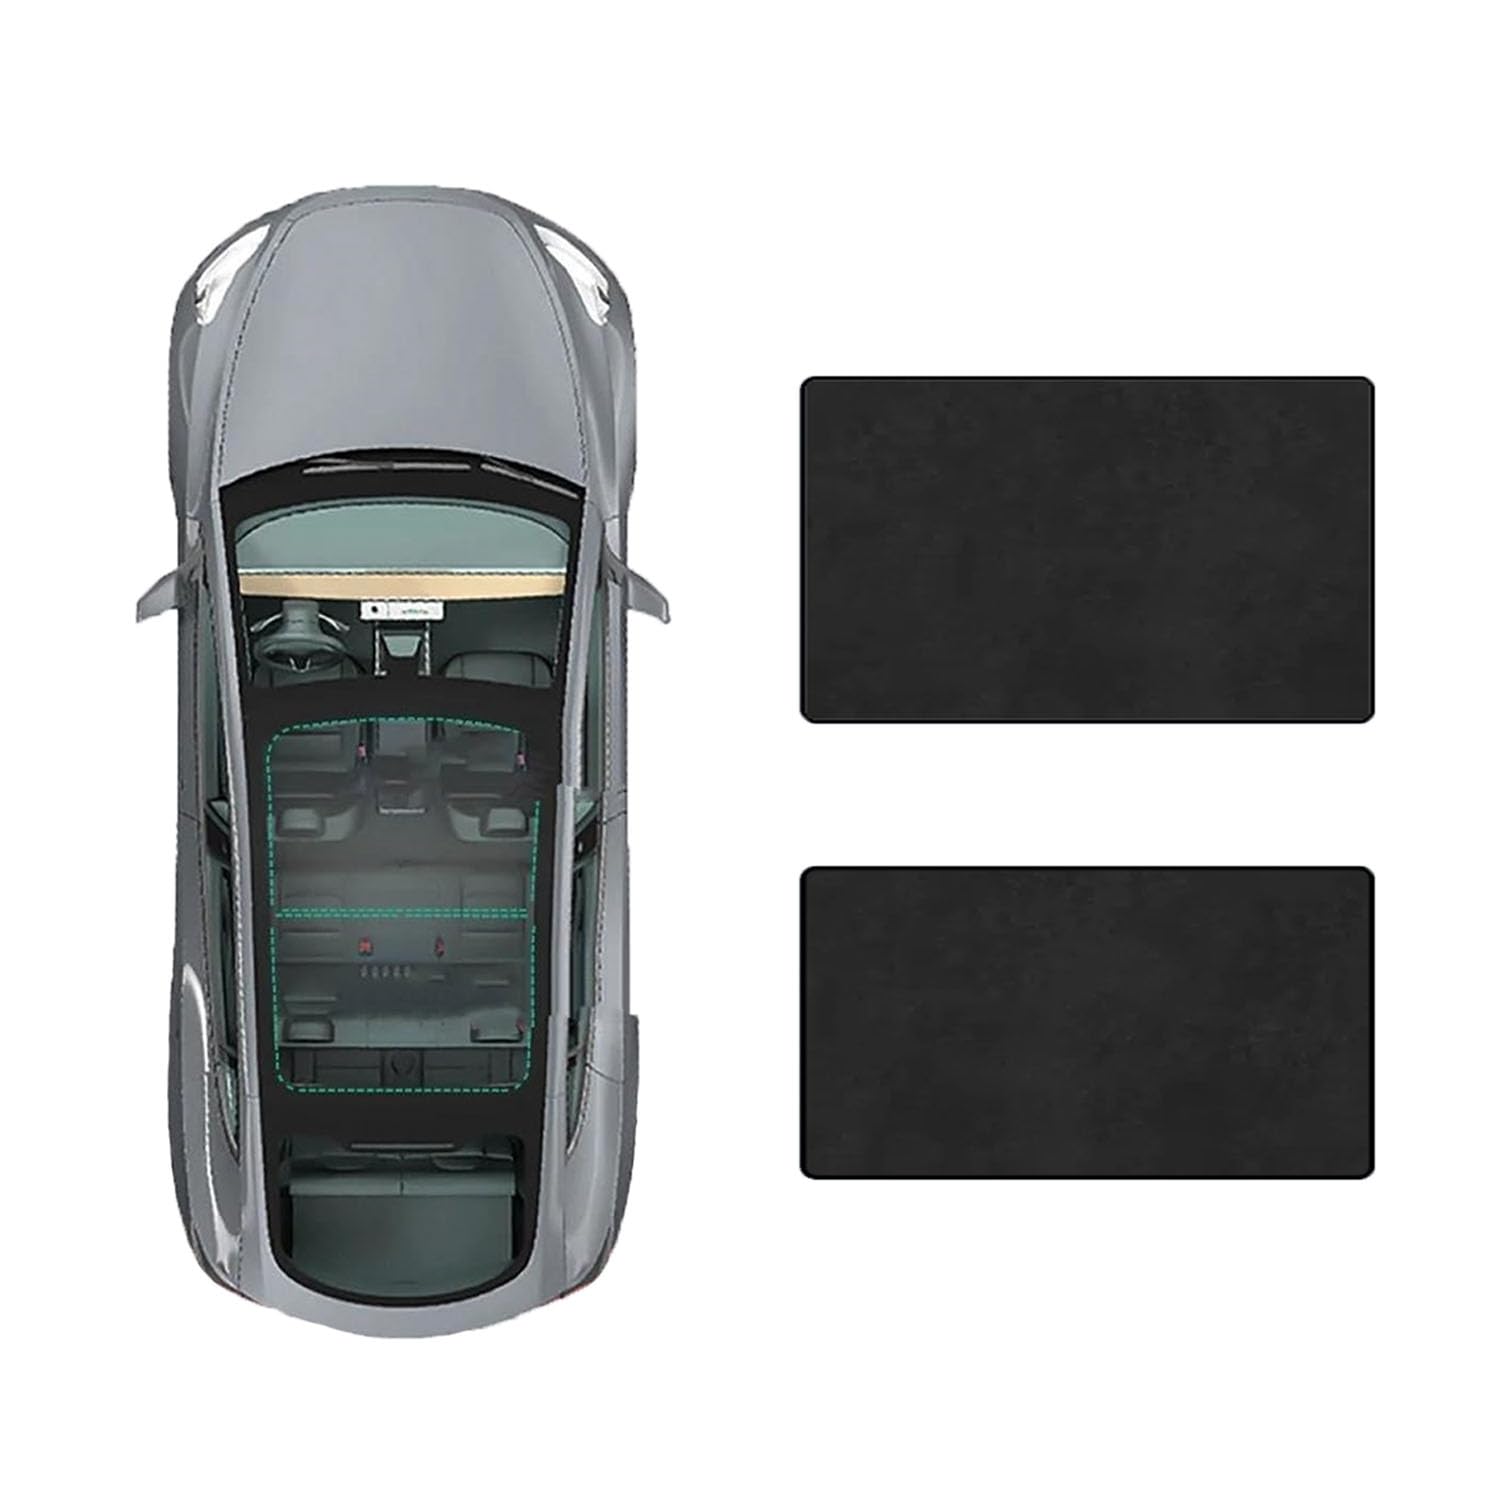 Auto Schiebedach Sonnenschirm Vorhang Für Mercedes Benz A-Class 2019-,UV-Schutz Schattierung vorne Heckscheibe Sonnenschutz,D-Black Suede von JiAQen